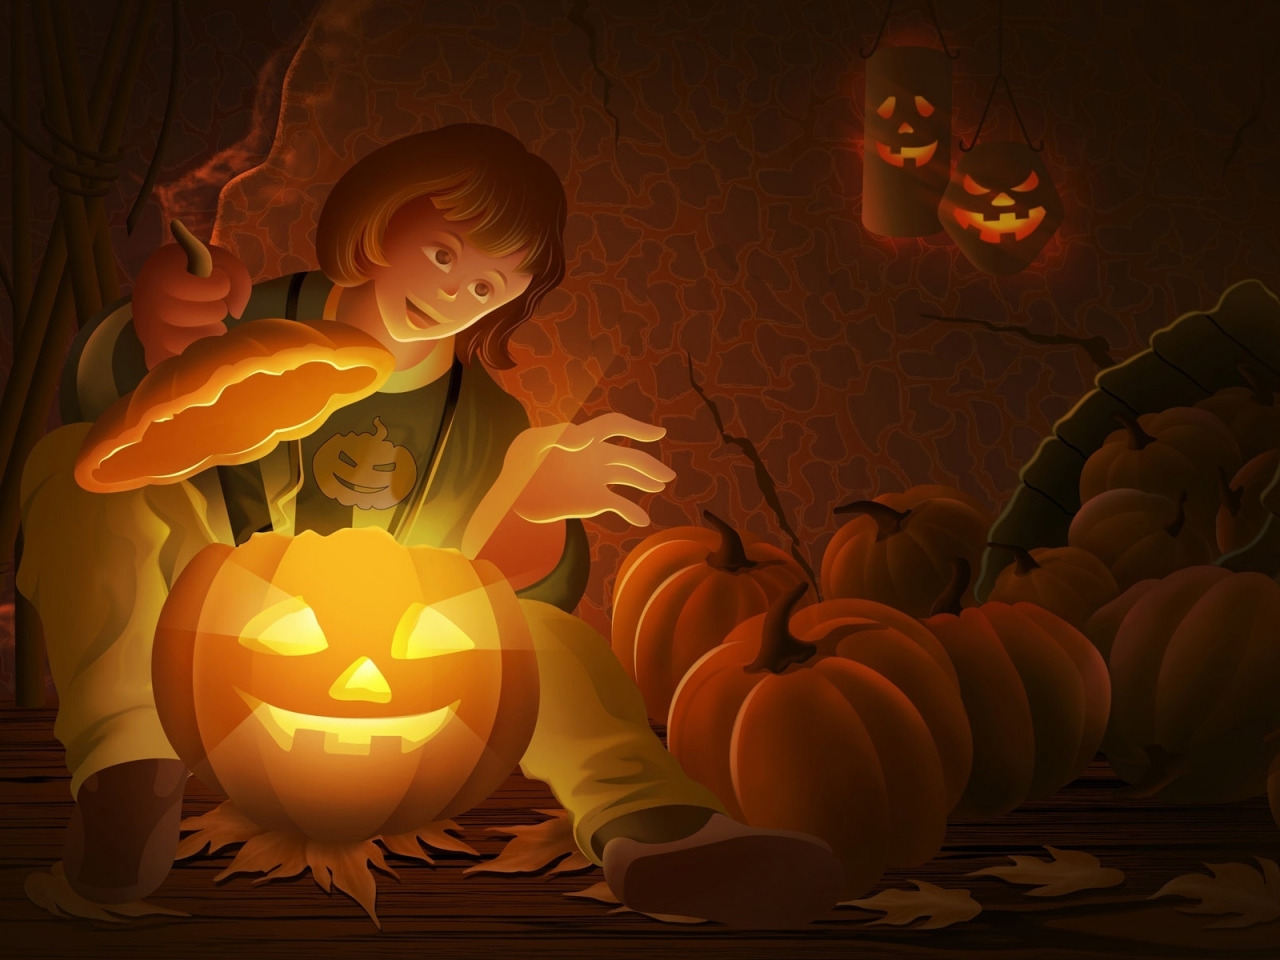 Cool Halloween Pumpkin for 1280 x 960 resolution